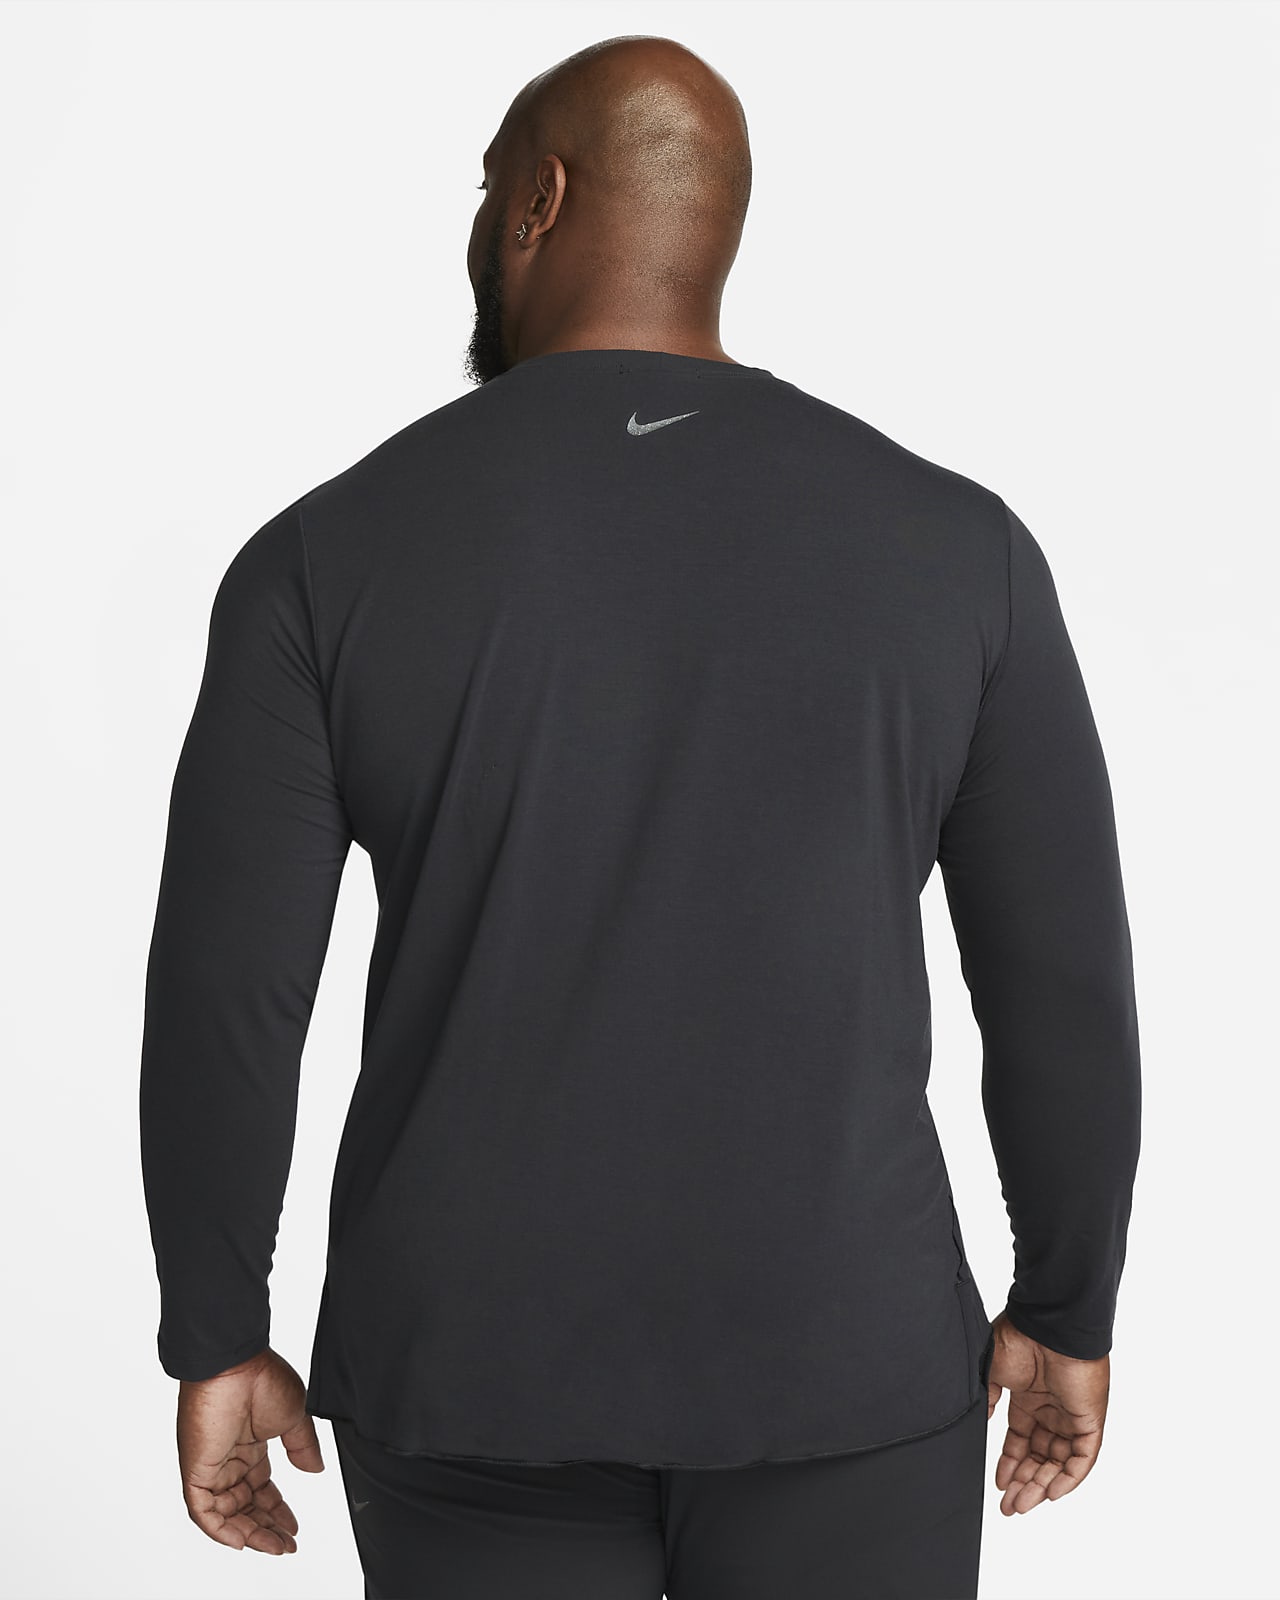 Nike Men's Yoga Dri-FIT T Shirt